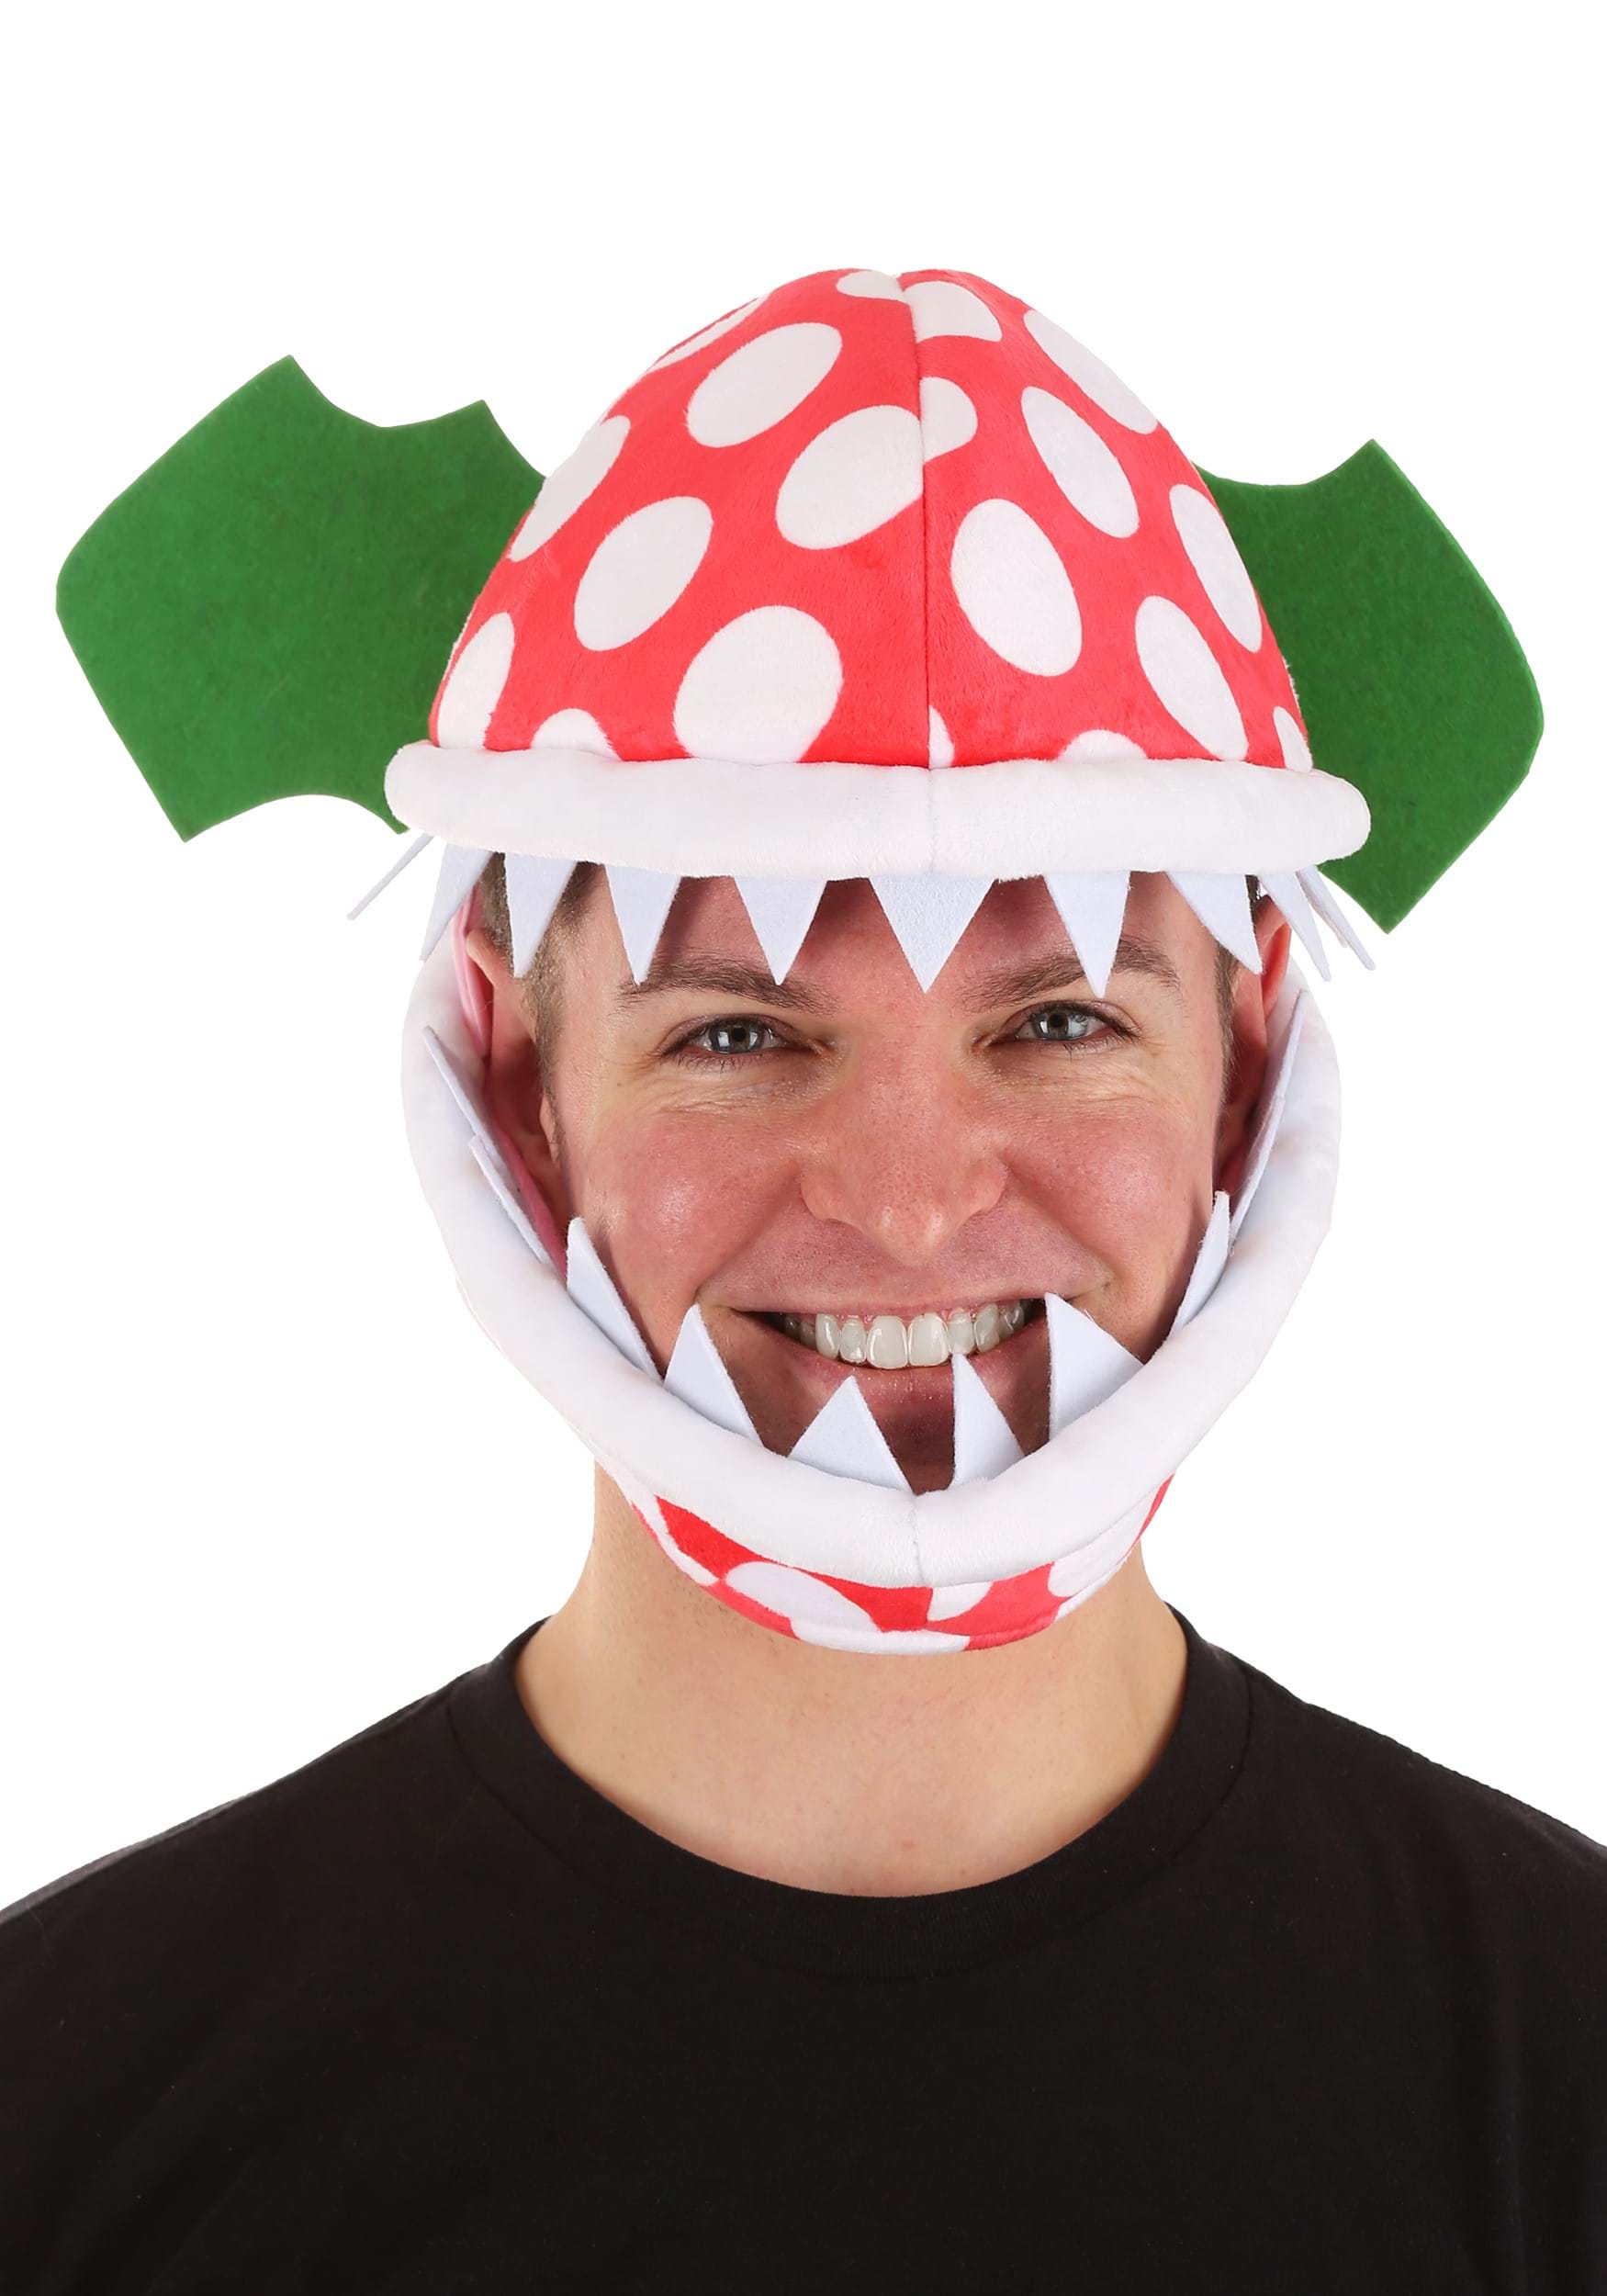 Mario piranha plant costume